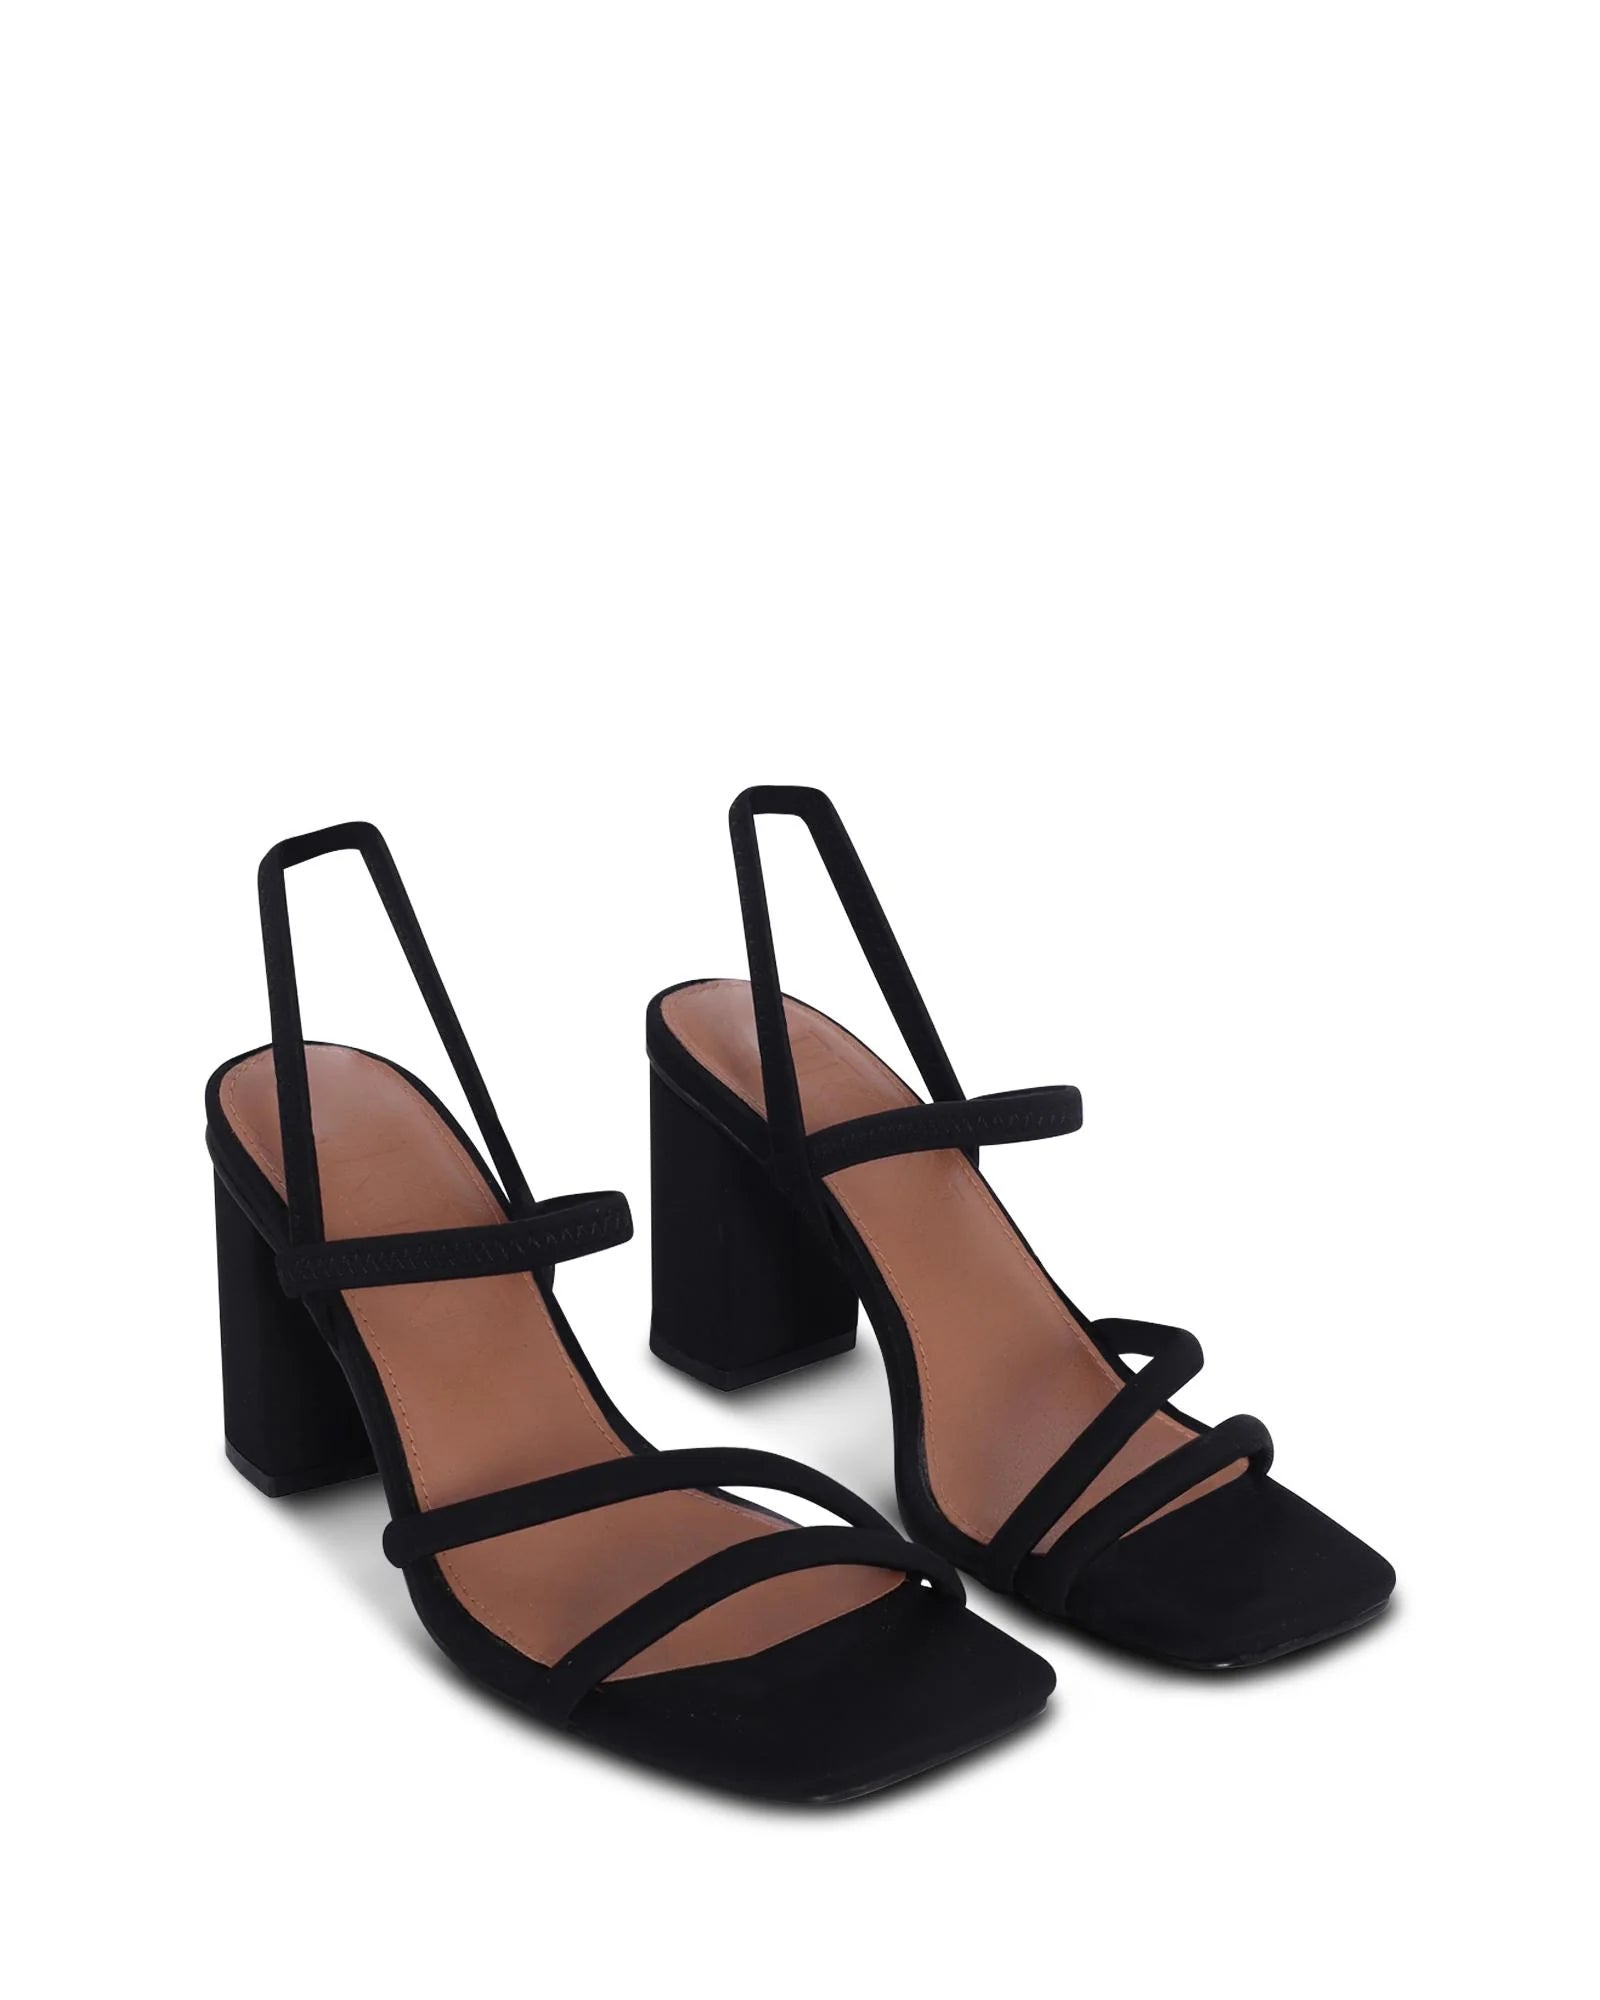 COLOMBO STRAPPY BLOCK HEEL - SKIN FOOTWEAR - 36, 37, 38, 39, 40, 41, BF, BLACK, Nude, womens footwear - Stomp Shoes Darwin